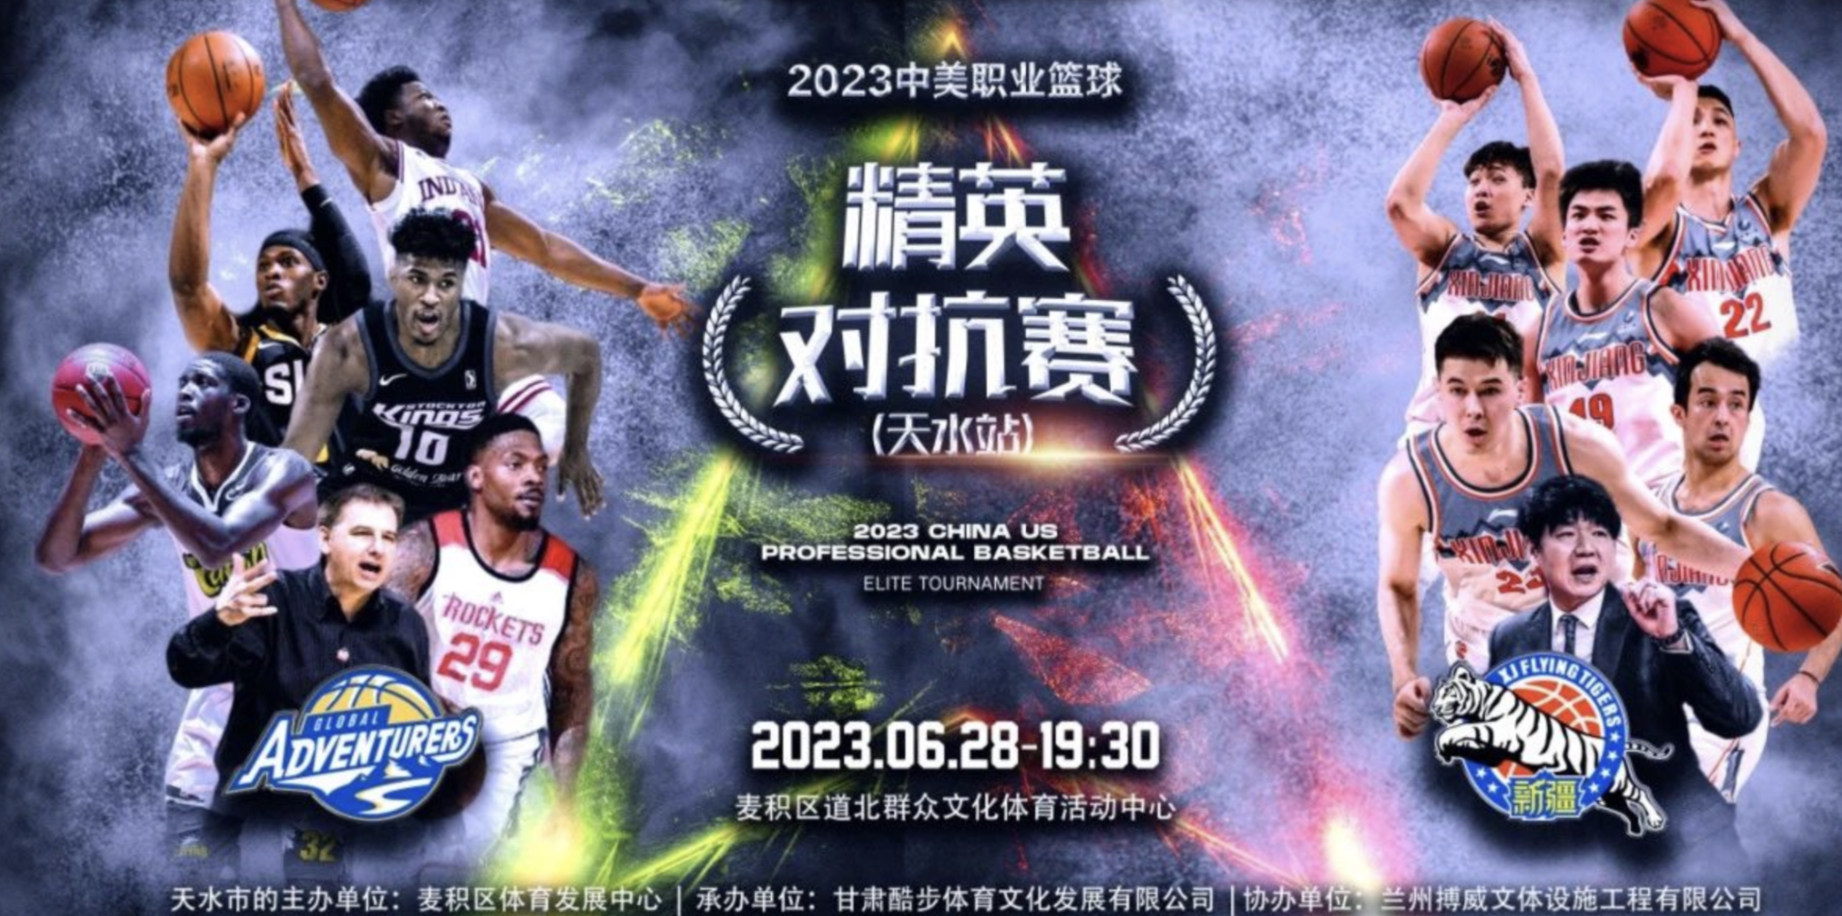 2023甘肃中美职业篮球巡回赛